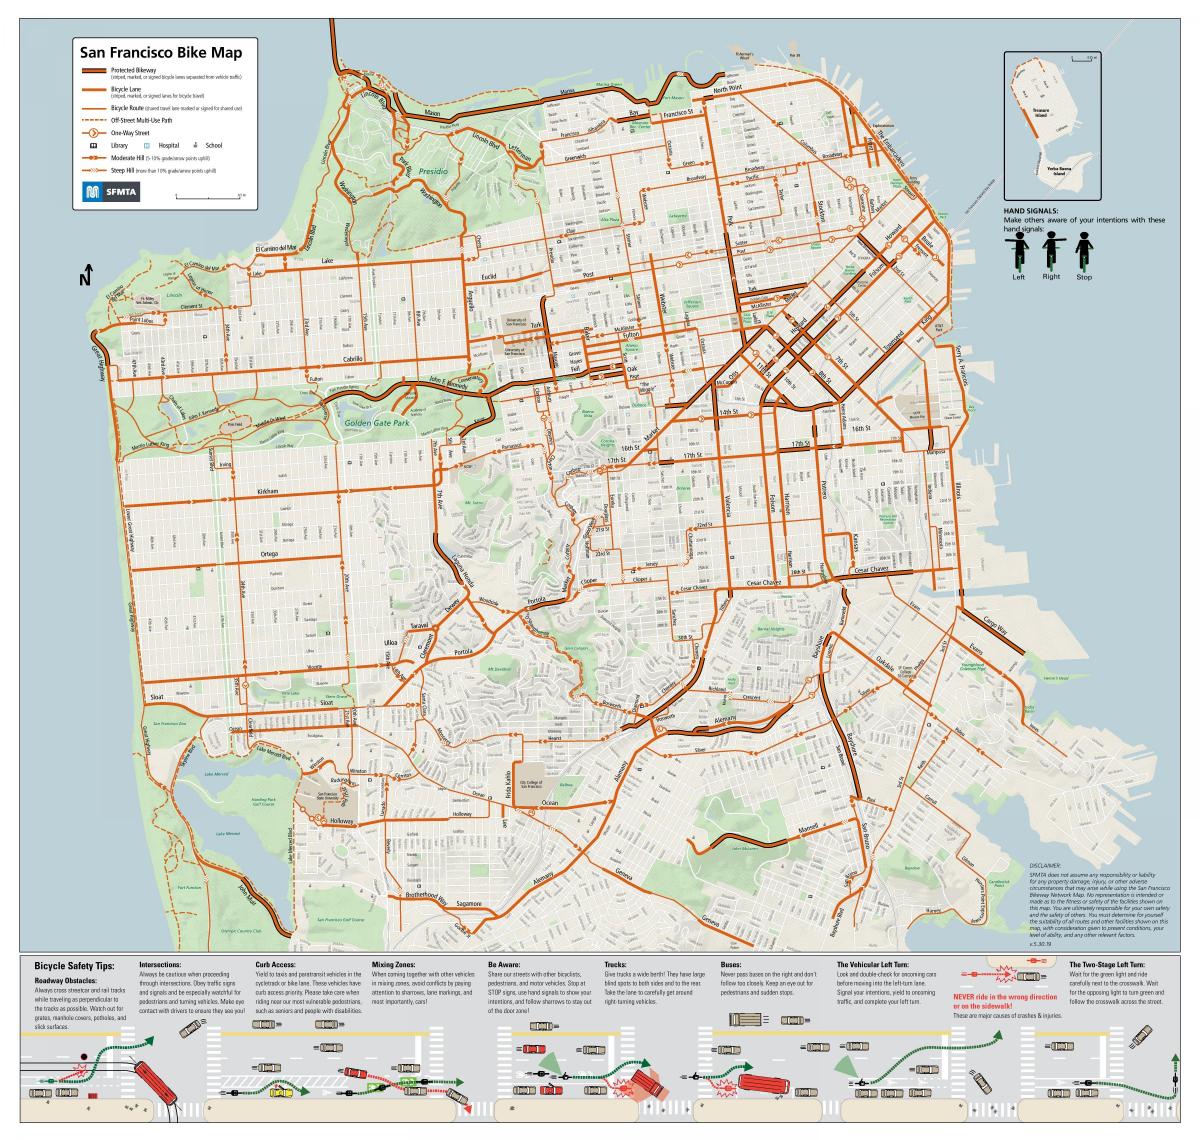 San Francisco bike lane map